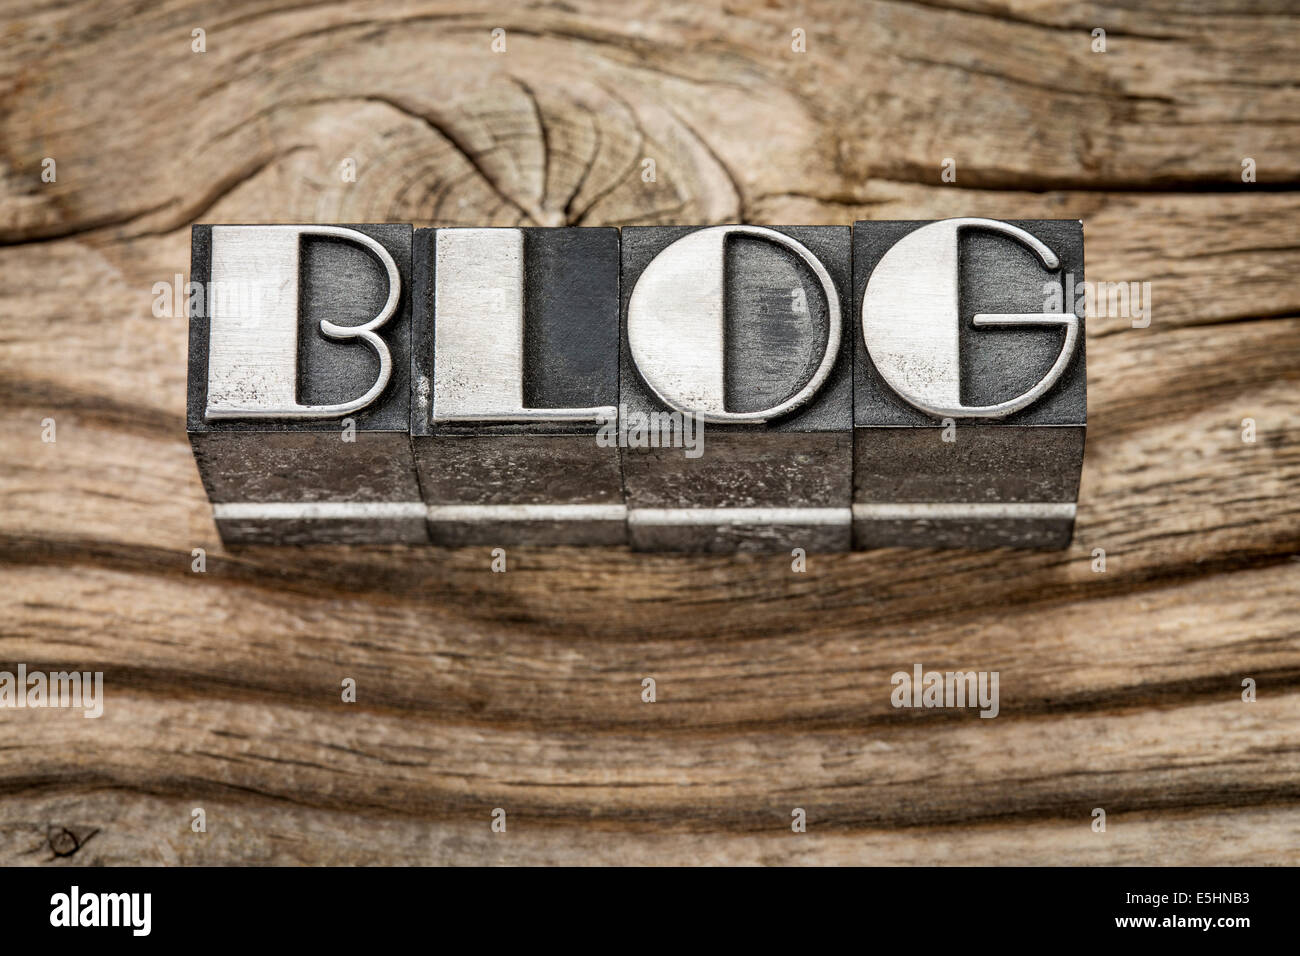 Blog word en tipografía metal tipo bloques de impresión contra la curtida madera de grano Foto de stock